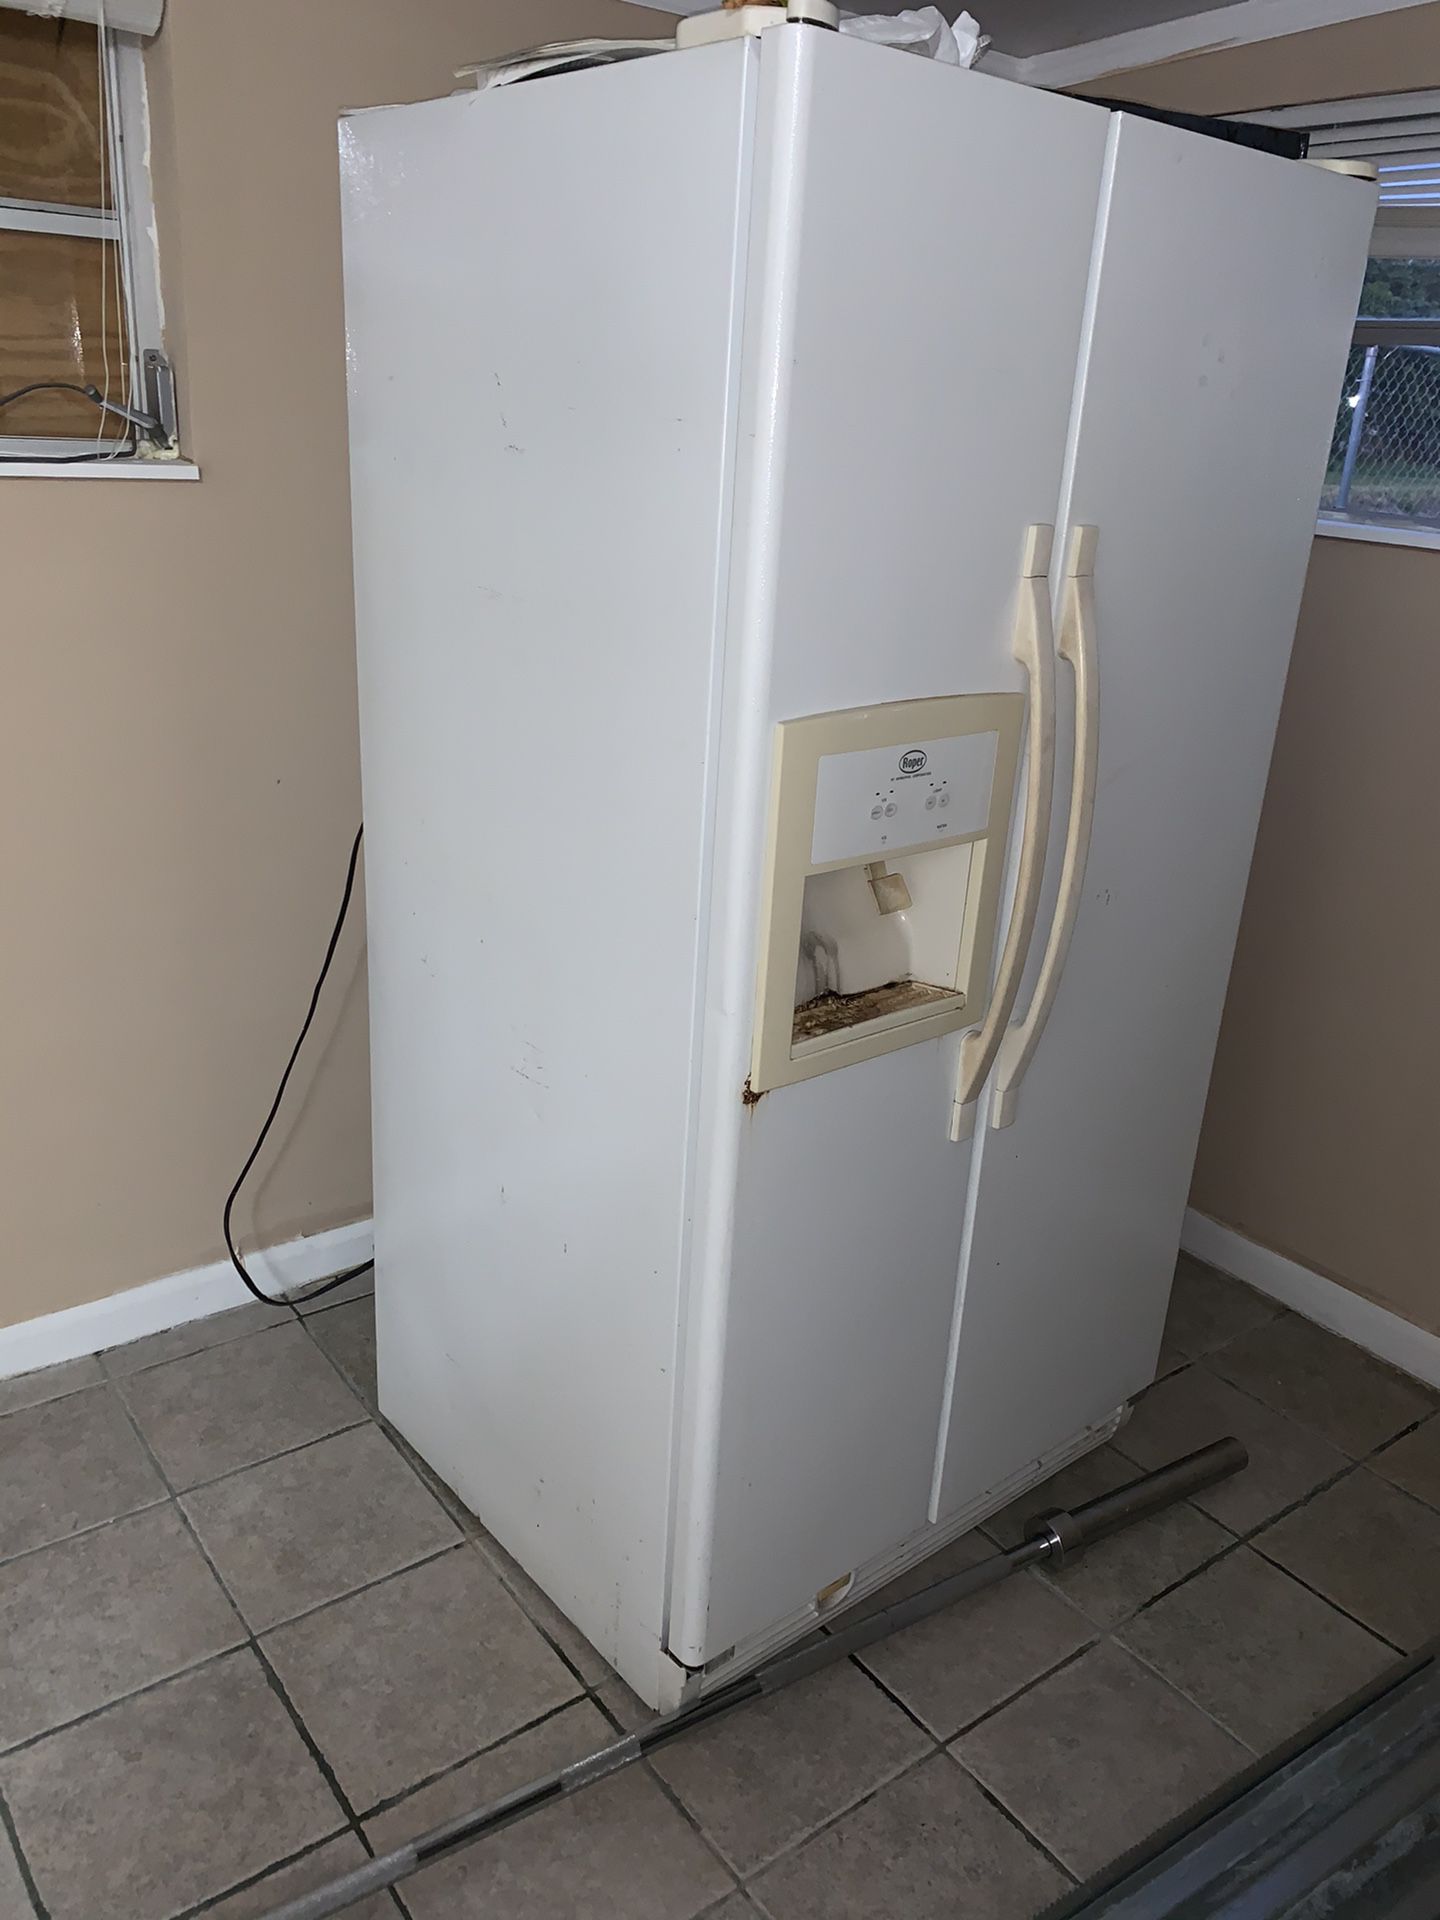 Used refrigerator.